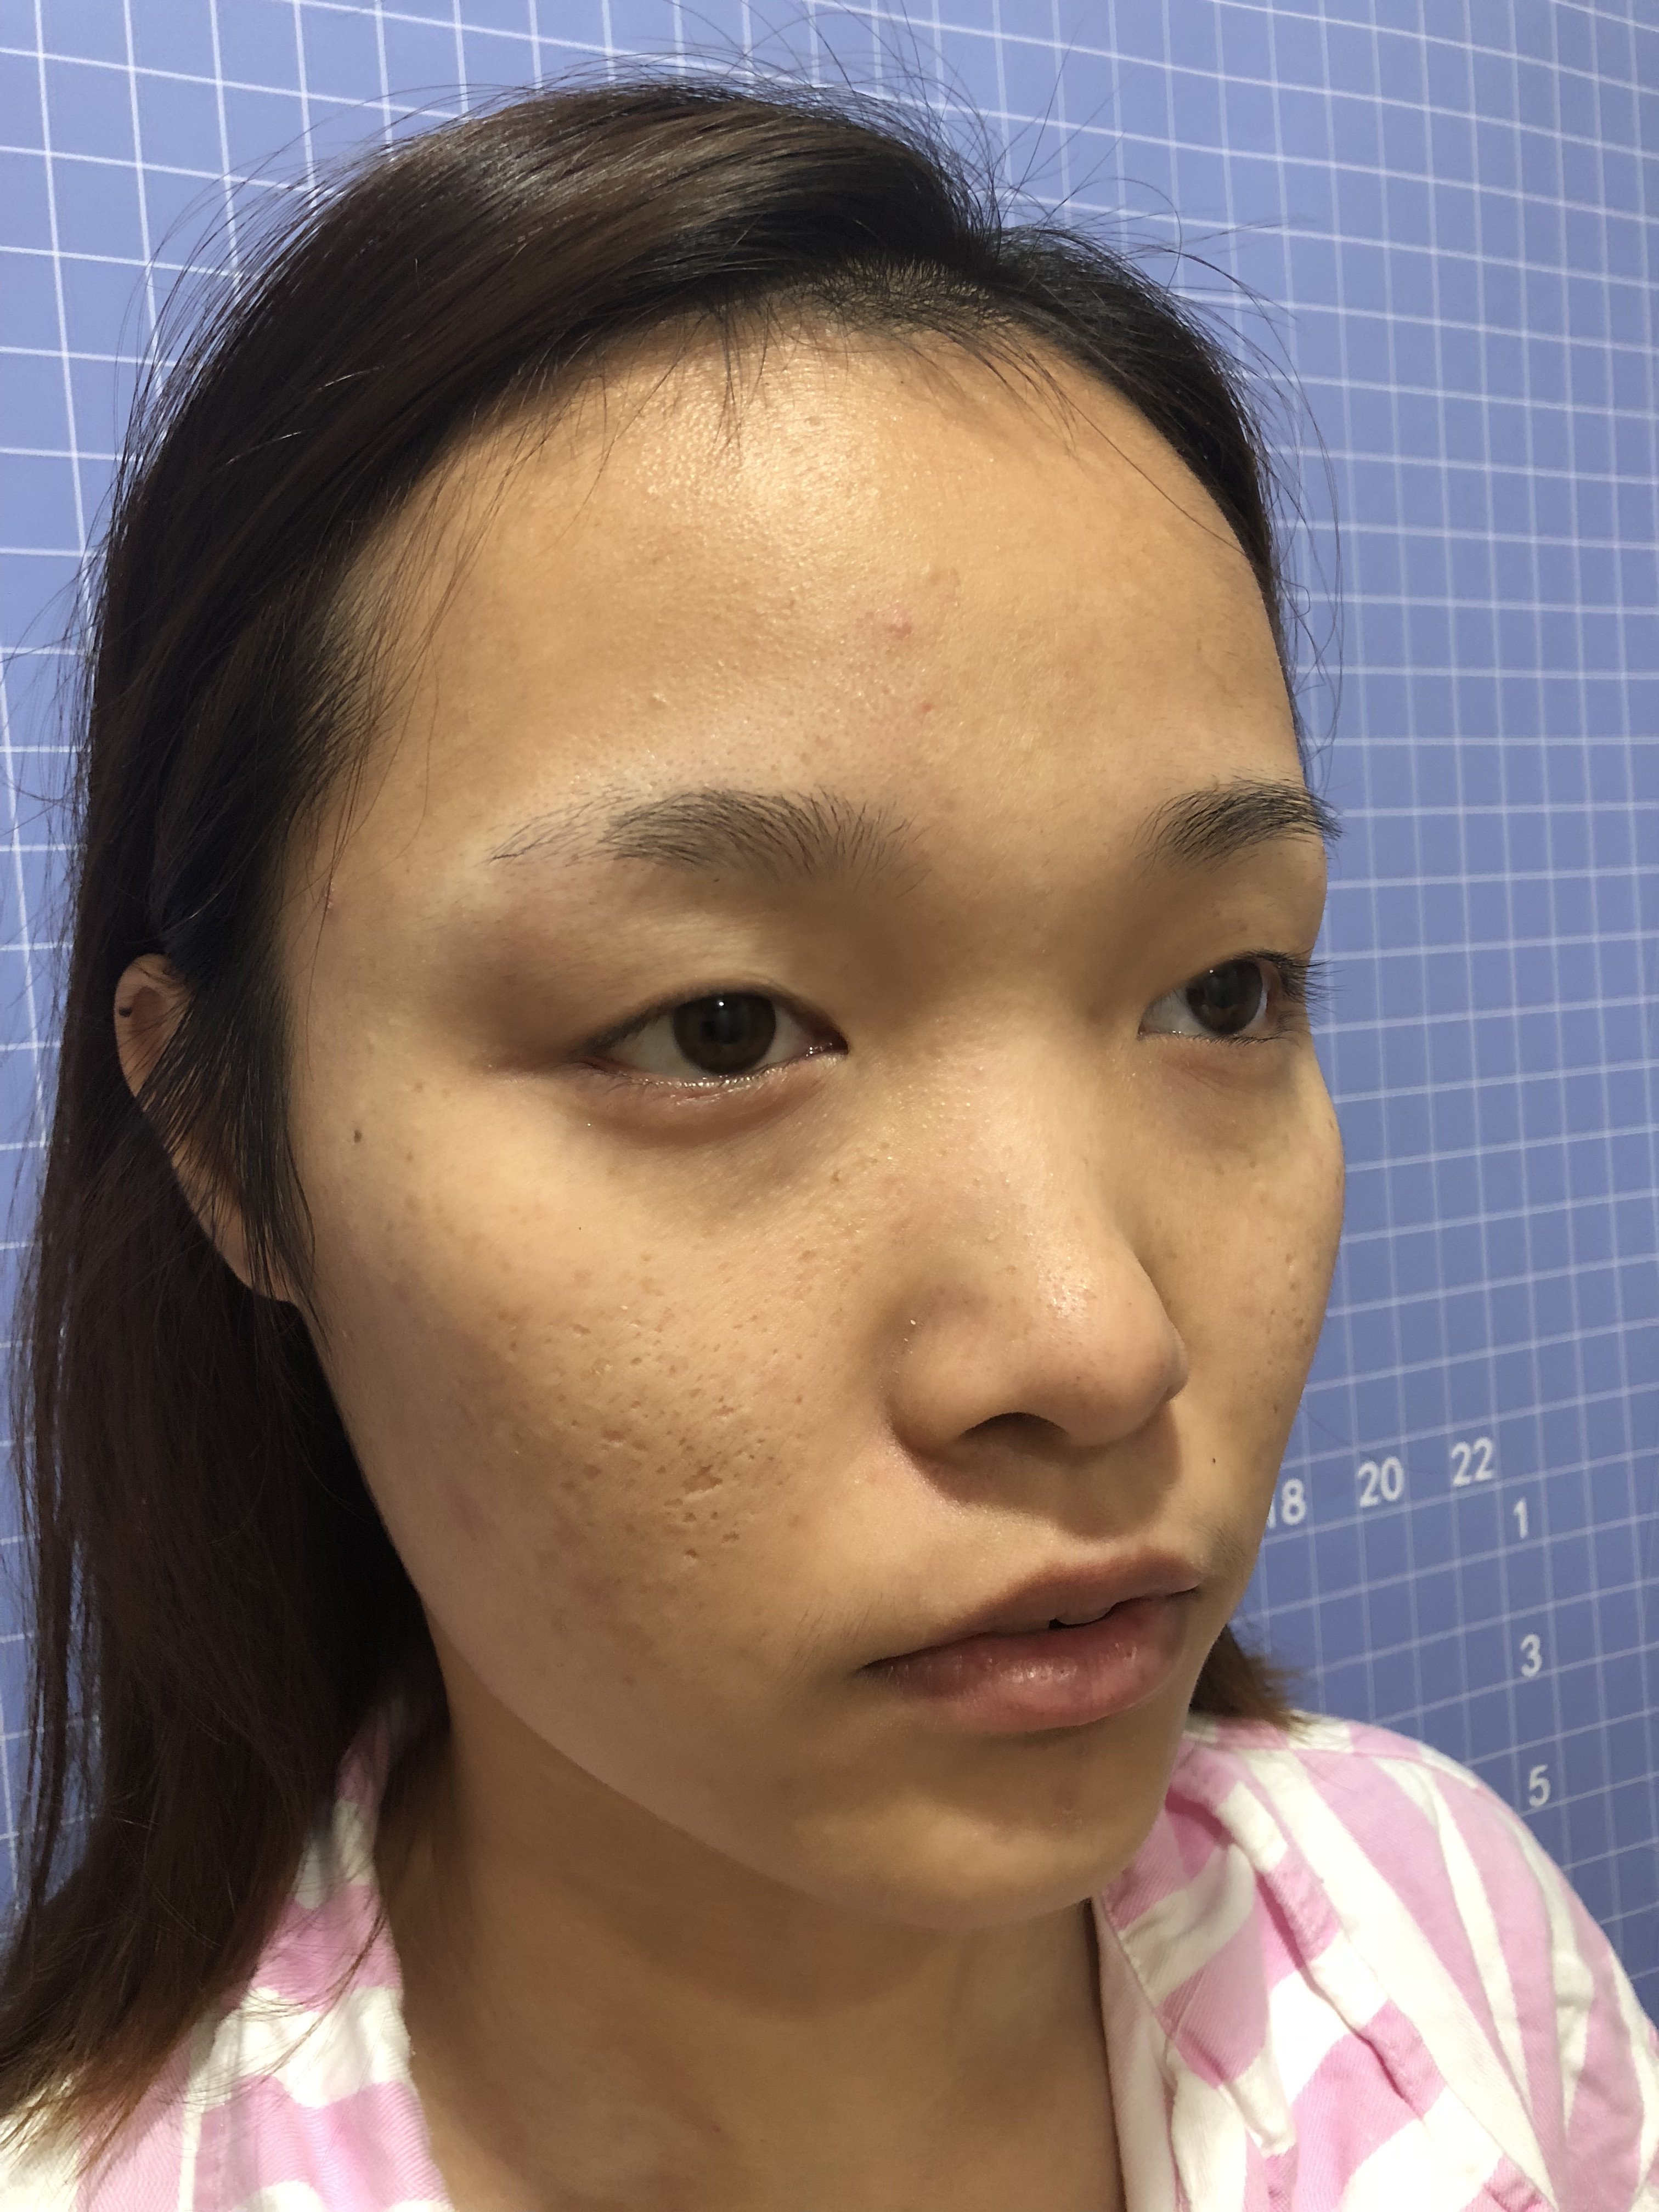 外切眼下至术后四十天右眼疤痕凹陷,可以恢复吗?这种疤痕修复有效吗?